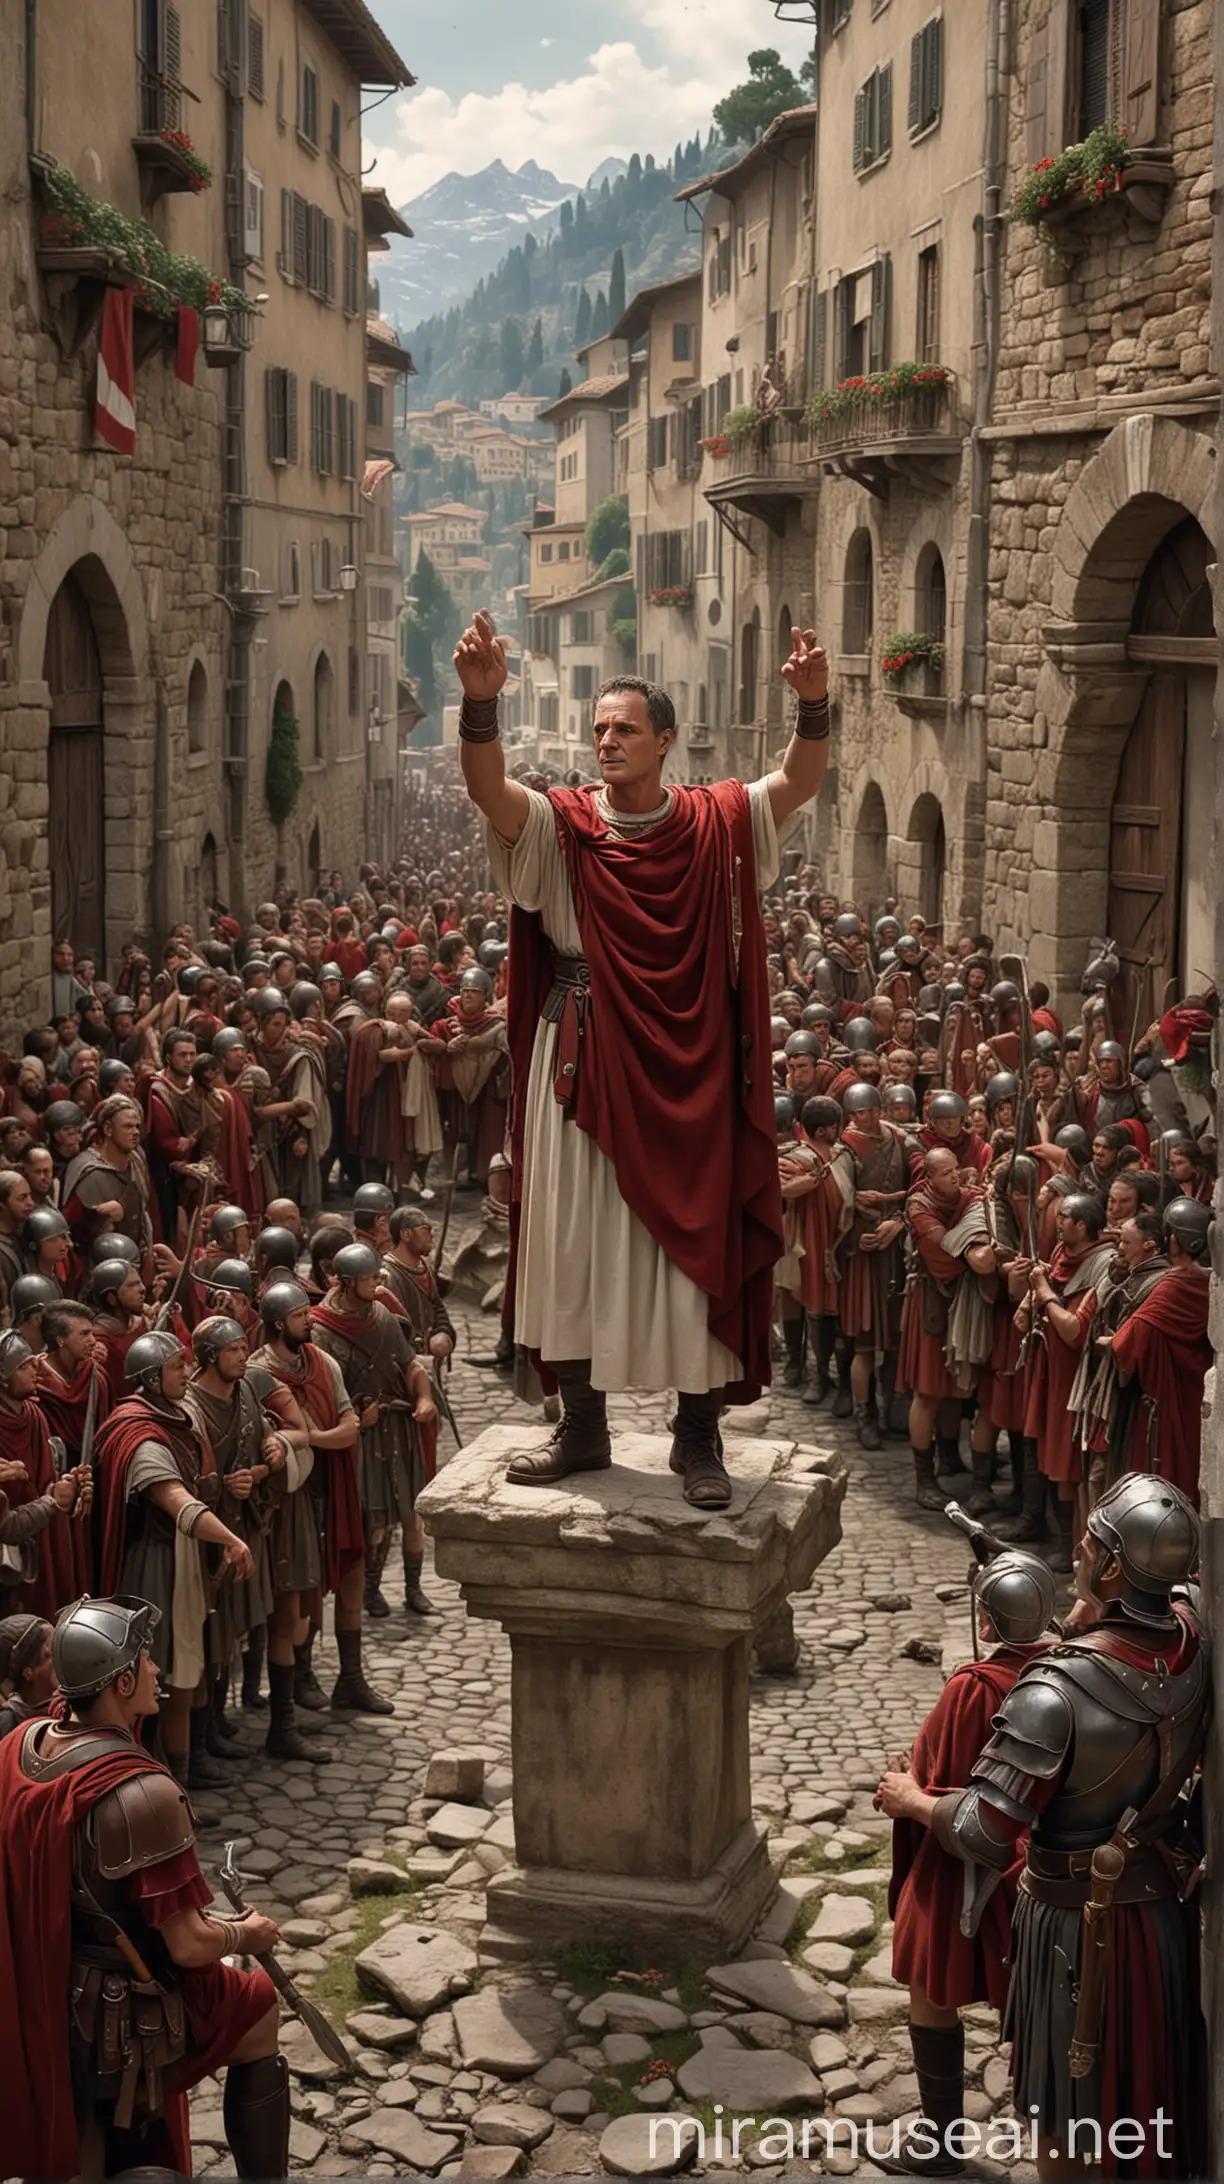 Julius Caesar Leading Soldiers in Alpine Village